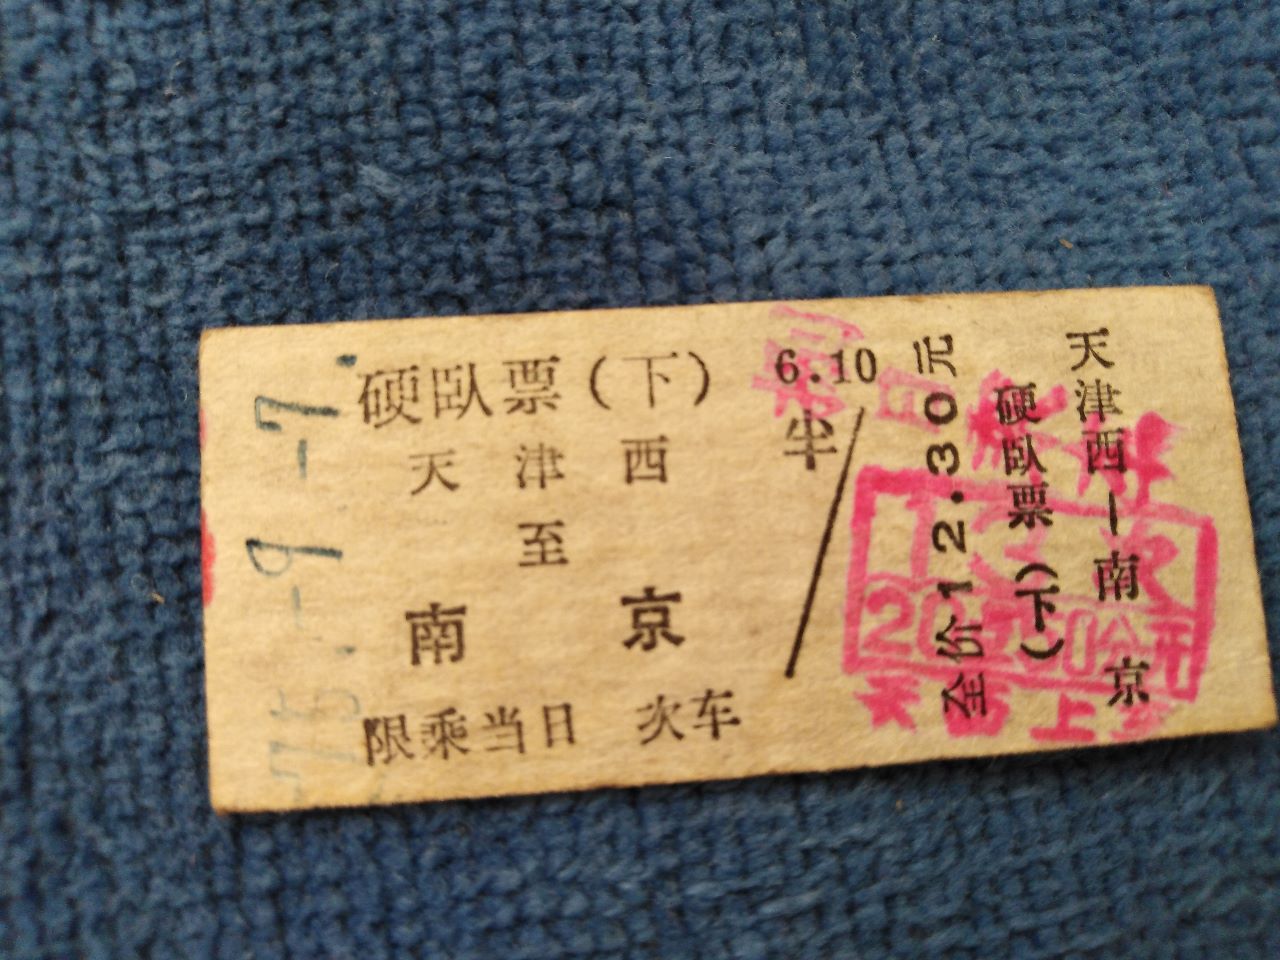 老火车票1975硬卧铺下(天津西